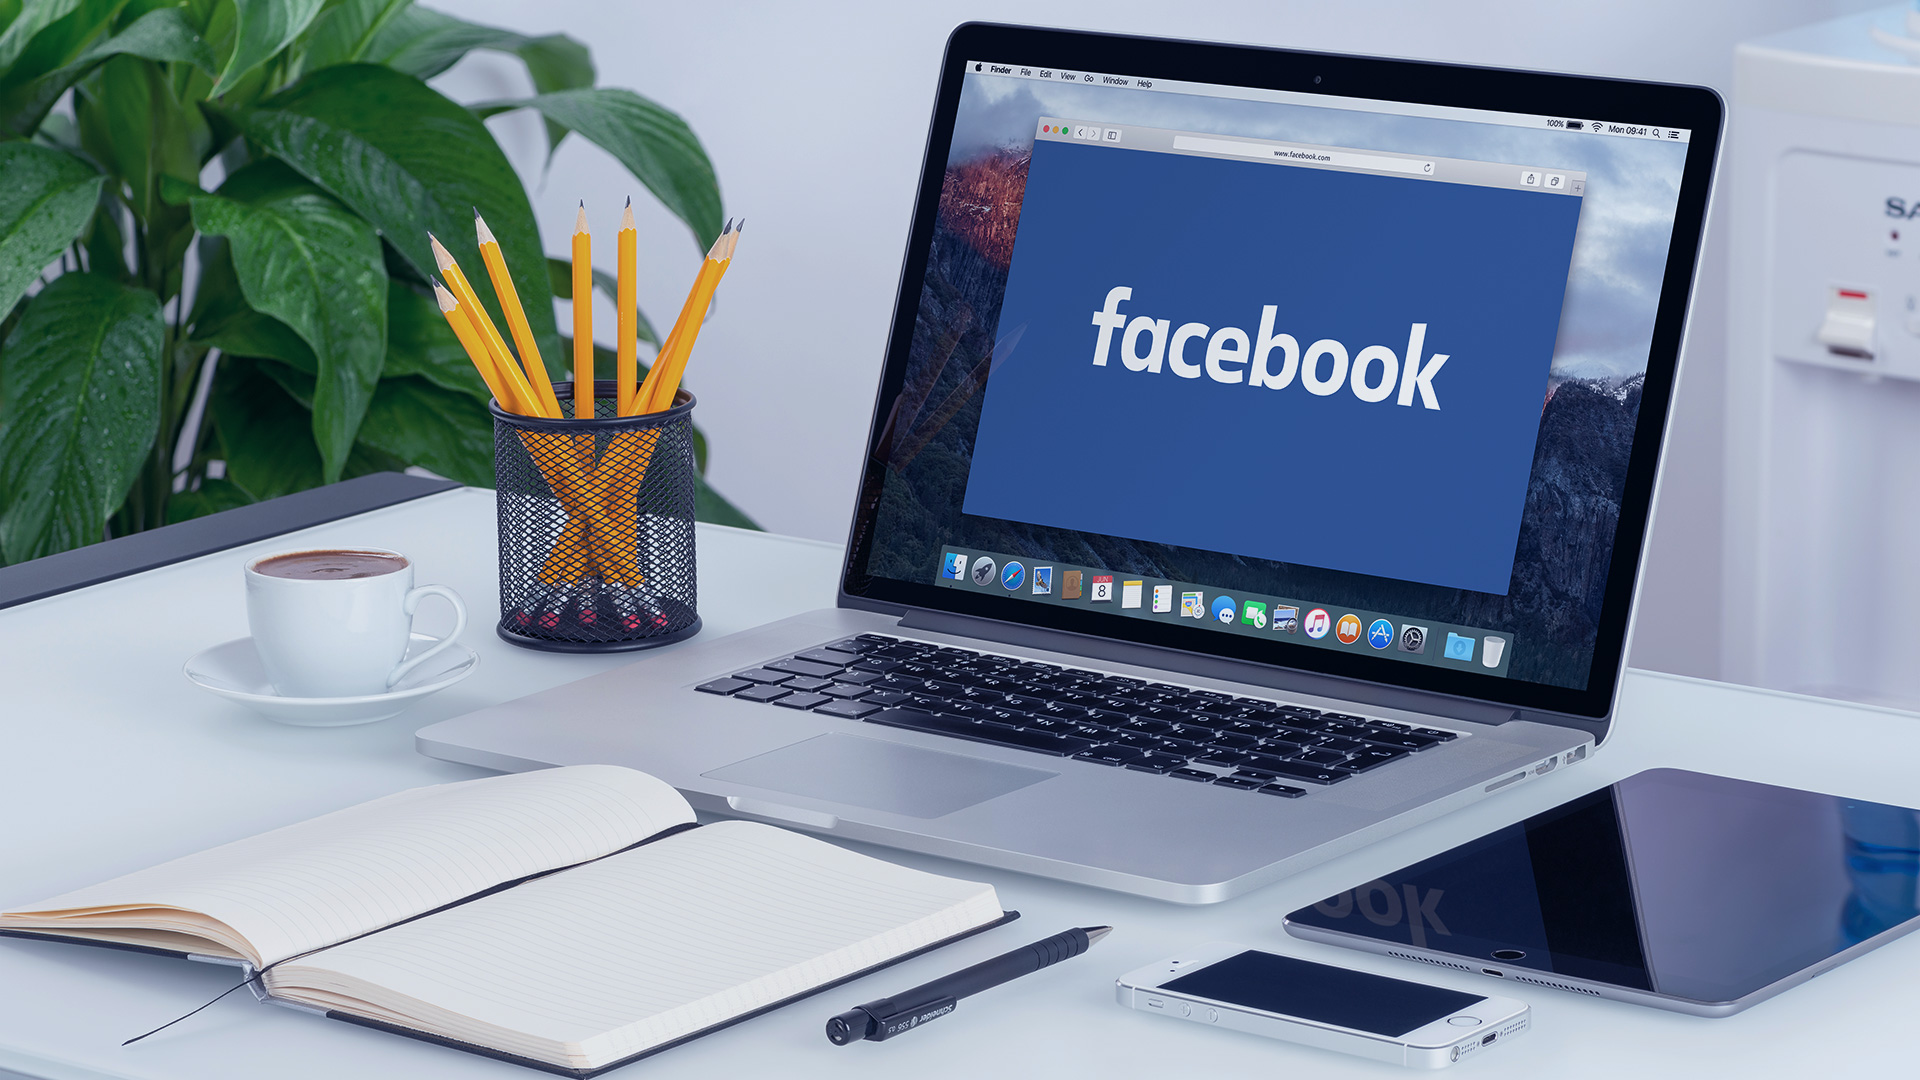 Mách bạn các bước kinh doanh online trên facebook từ A-Z